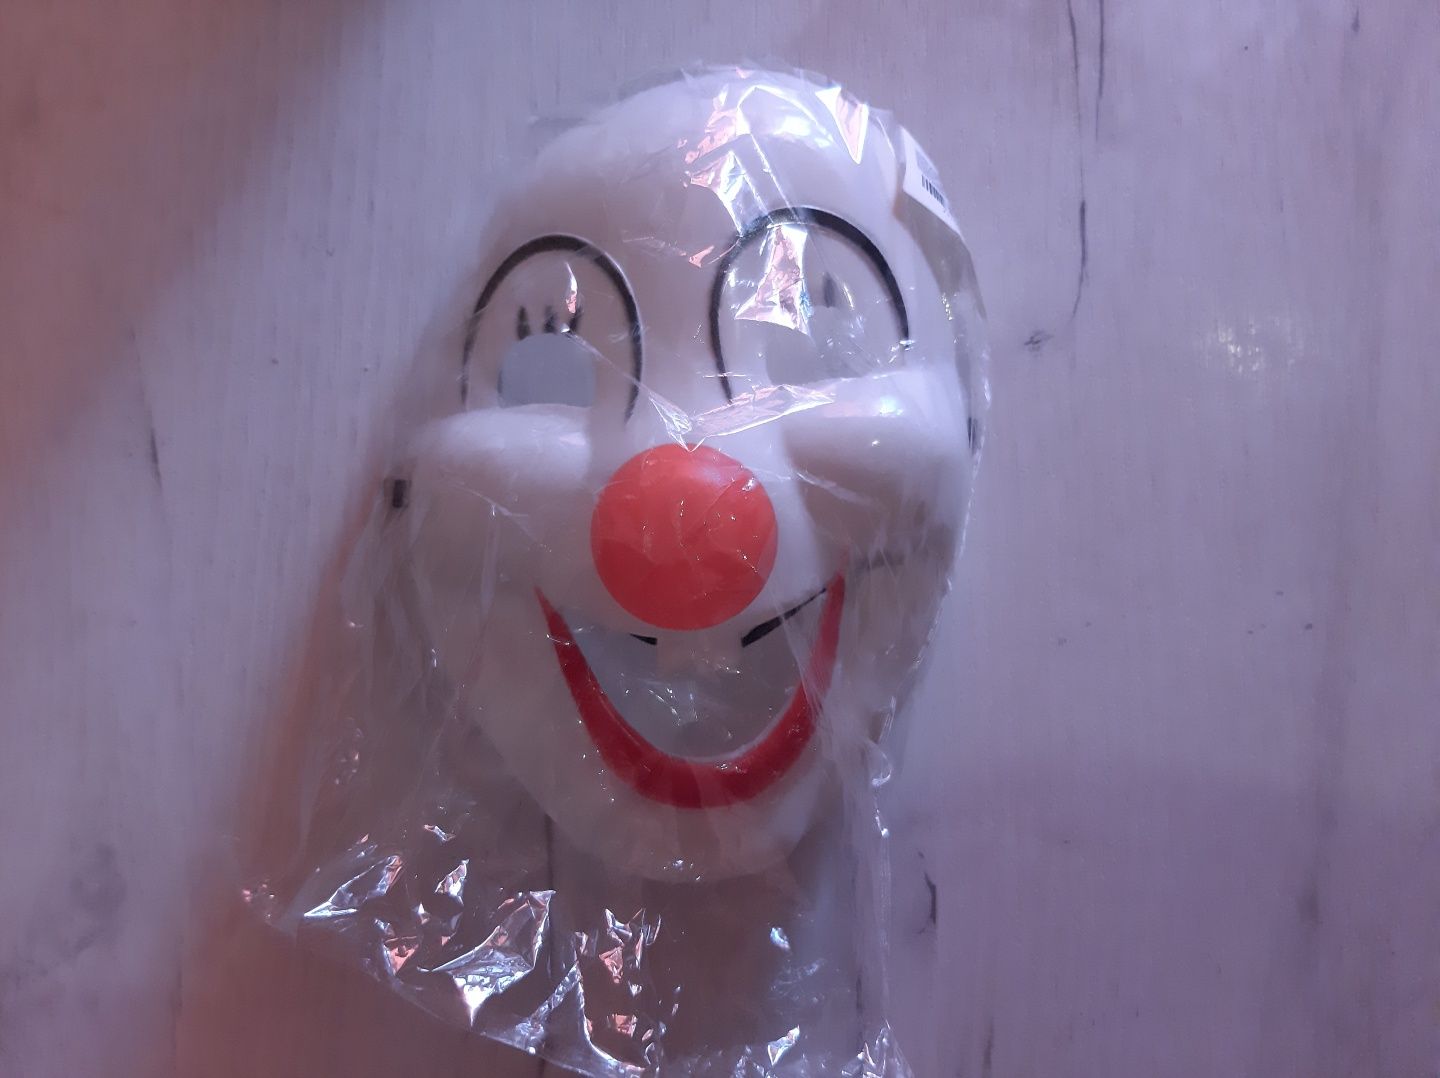 Новая карнавальная маска Клоун